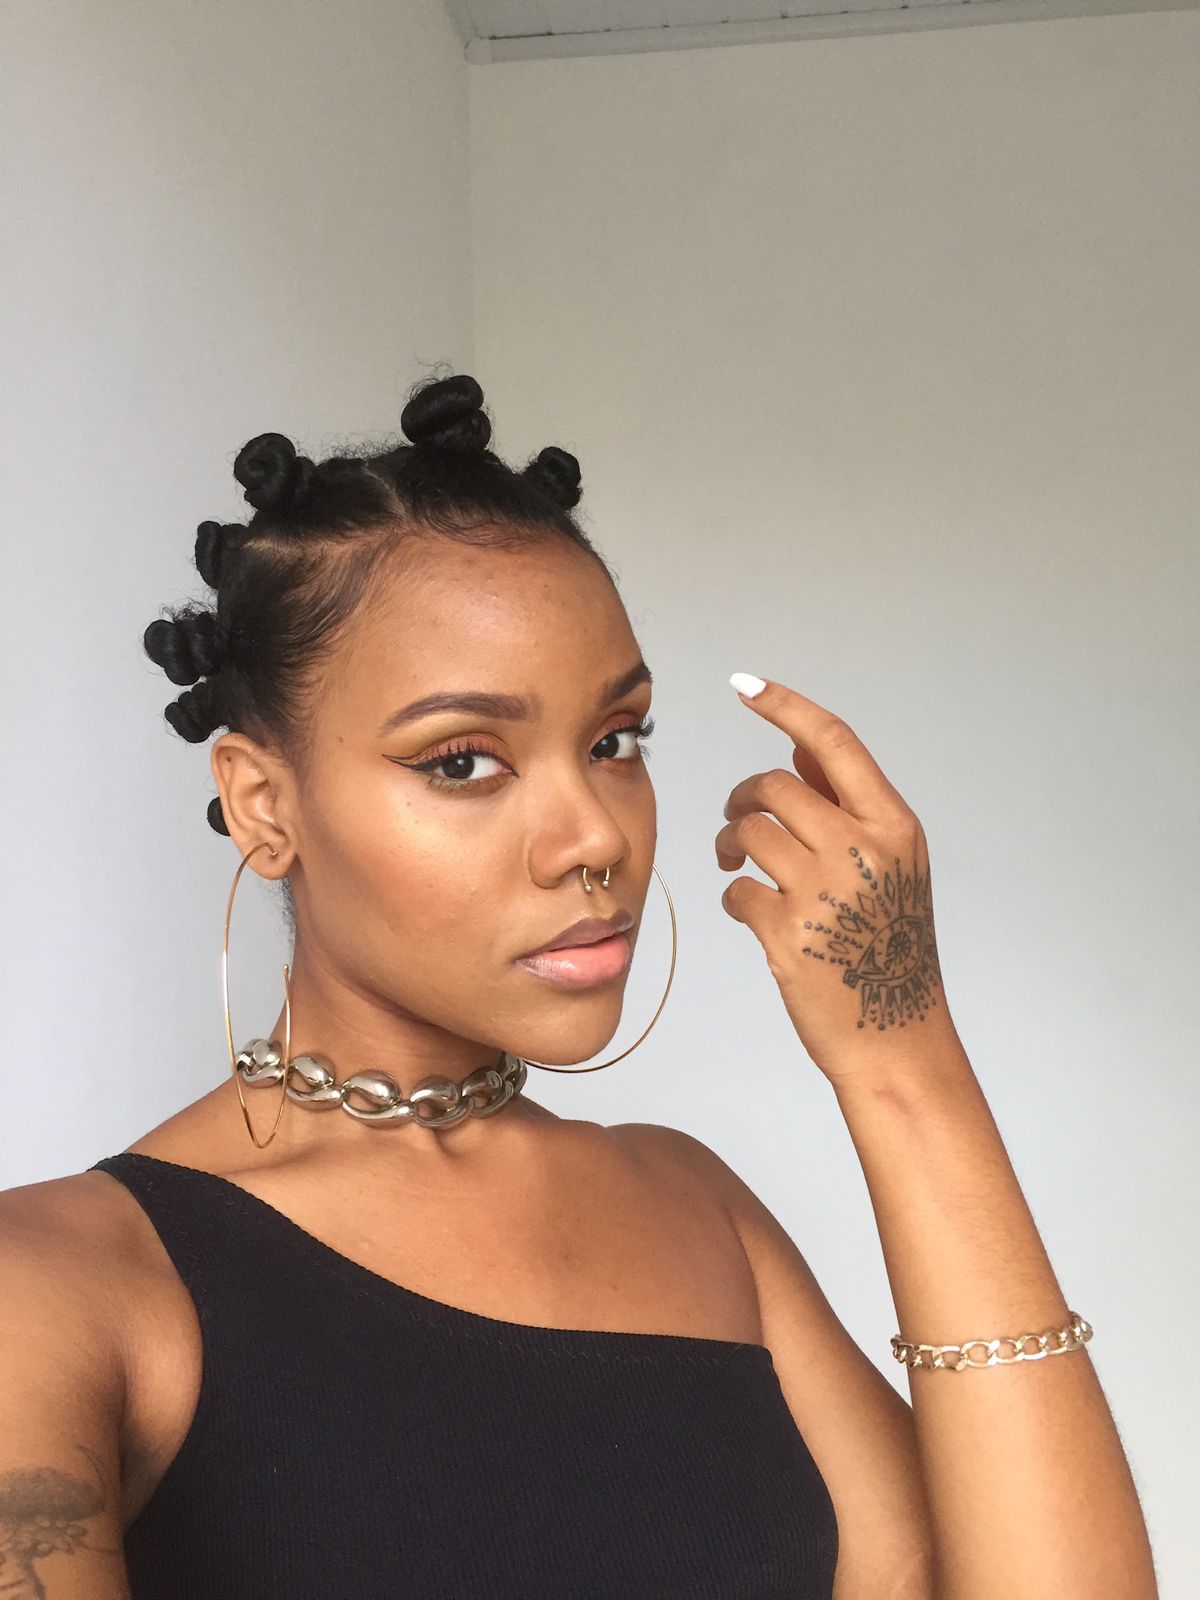 nfluencers discutem a relação do cabelo afro com a autoestima: “Eu descobri que o racismo existe”